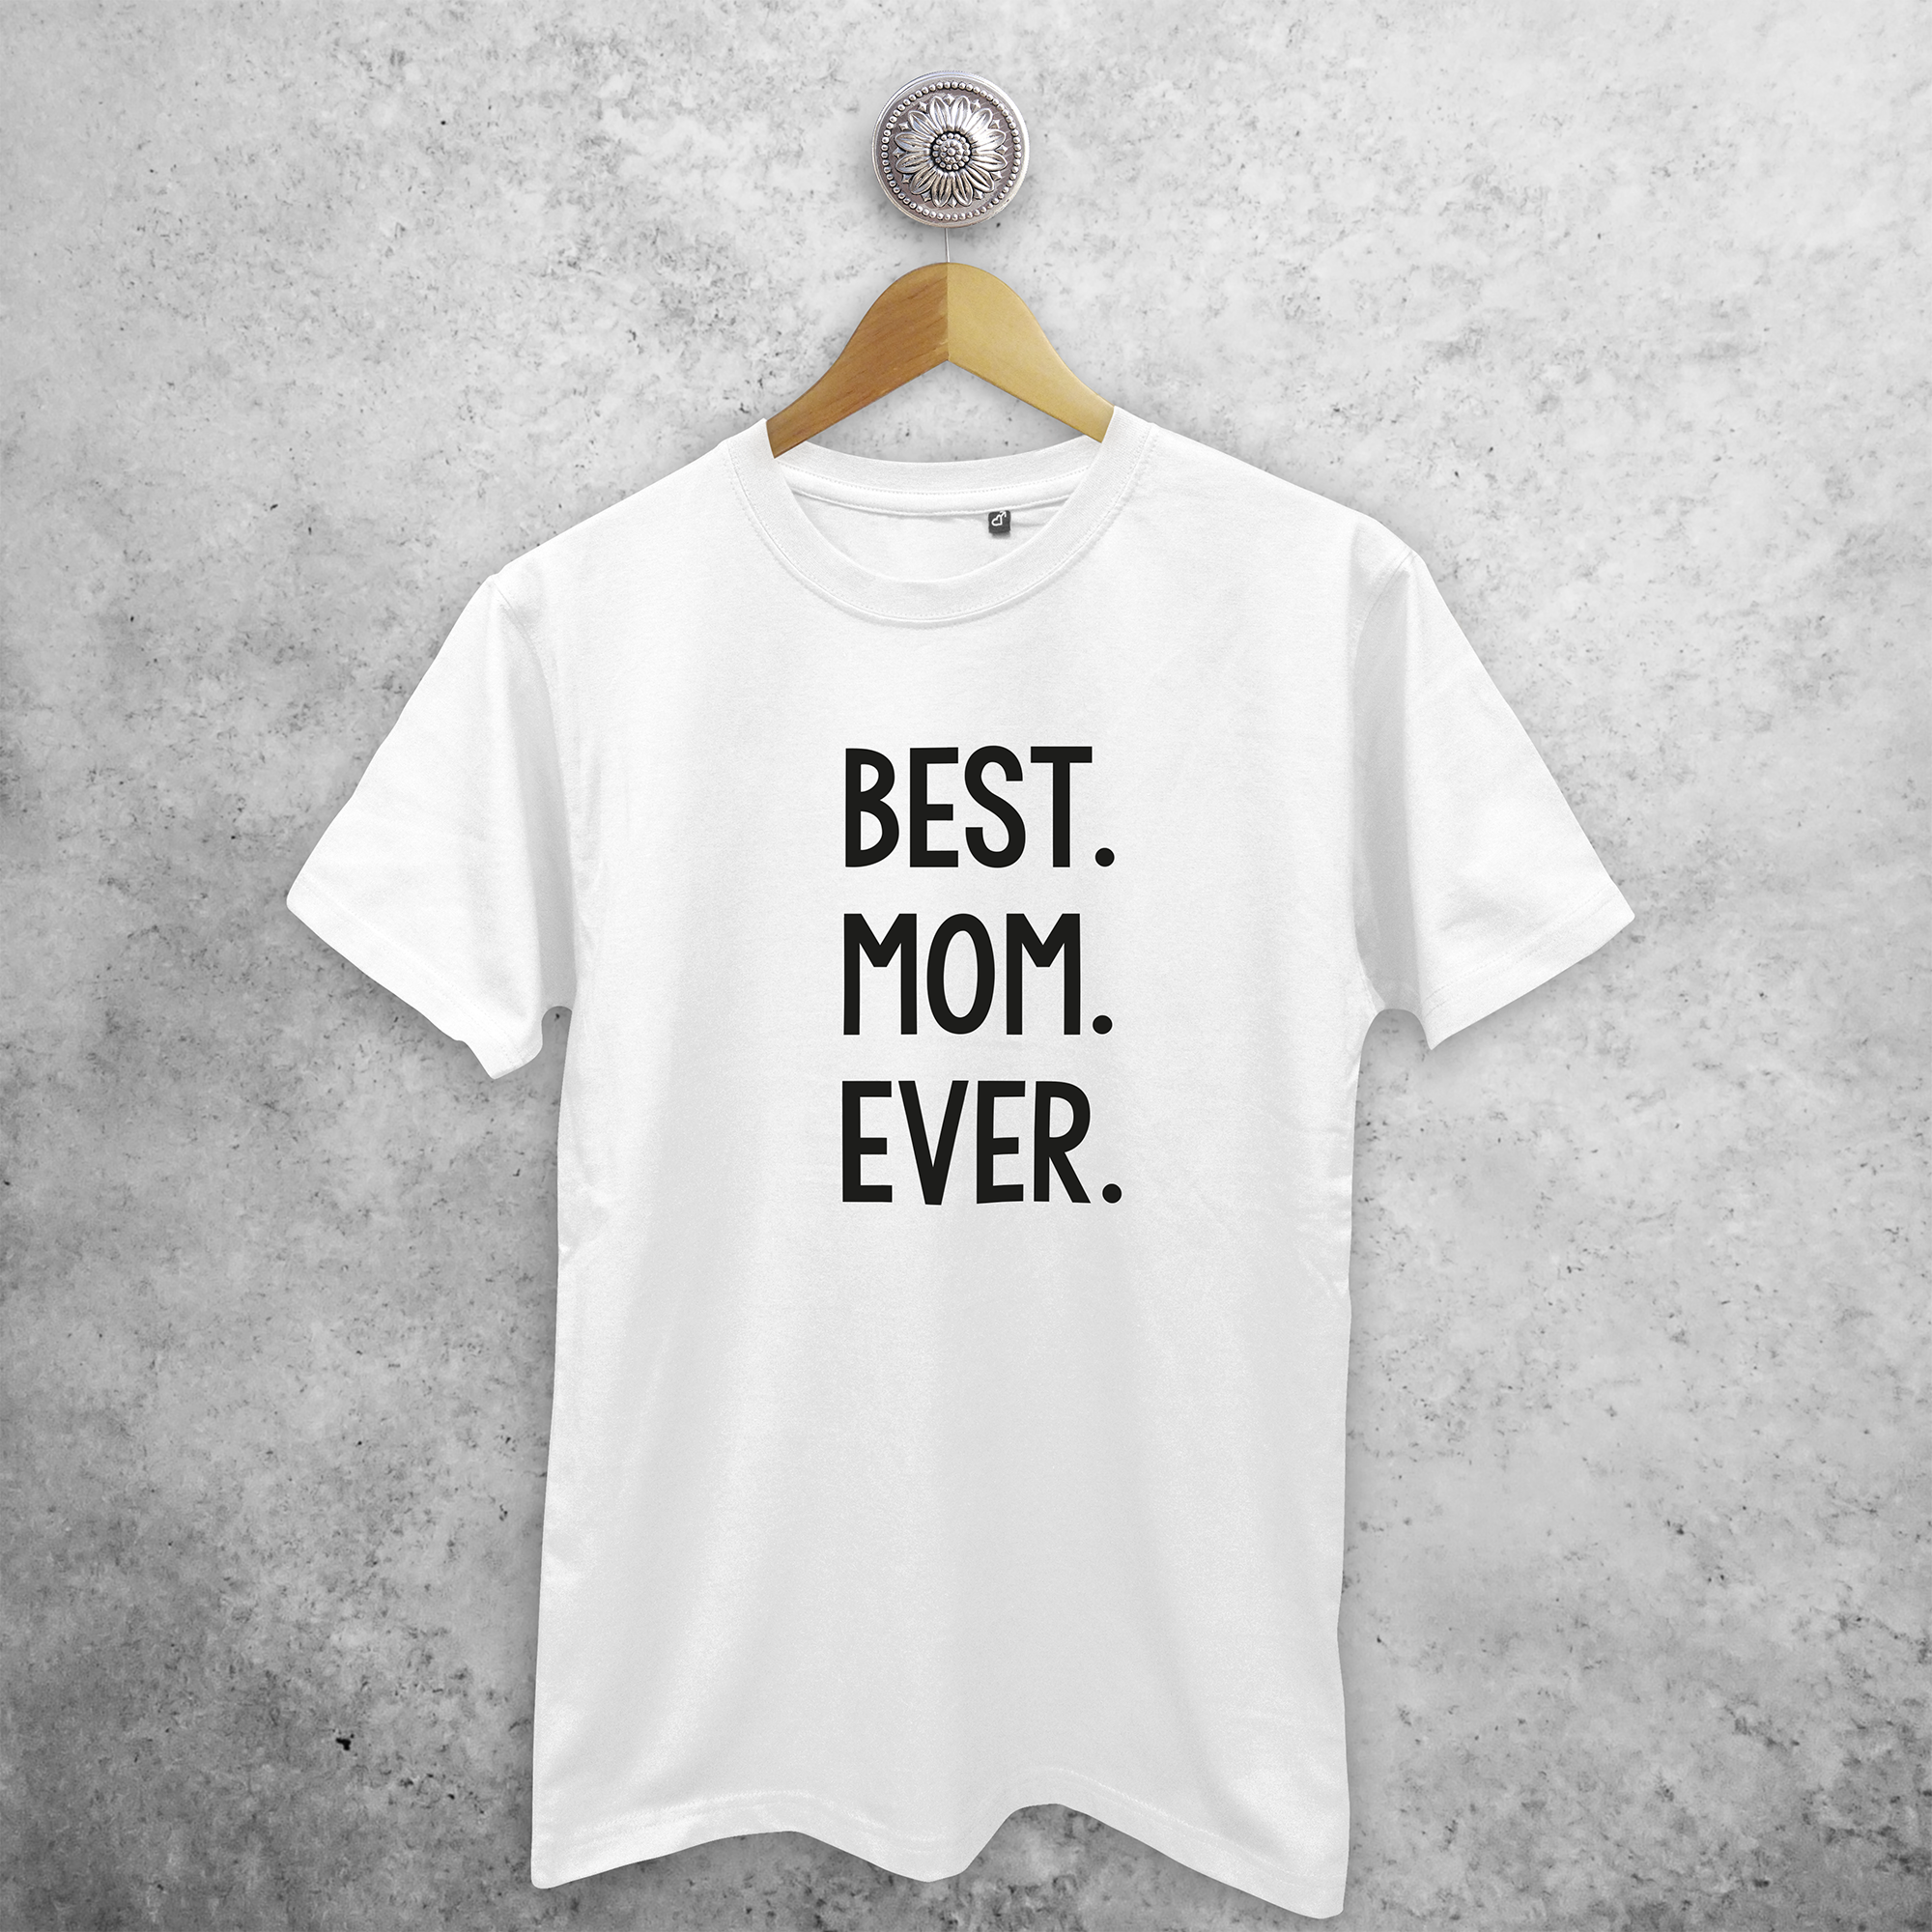 'Best. Mom. Ever.' volwassene shirt